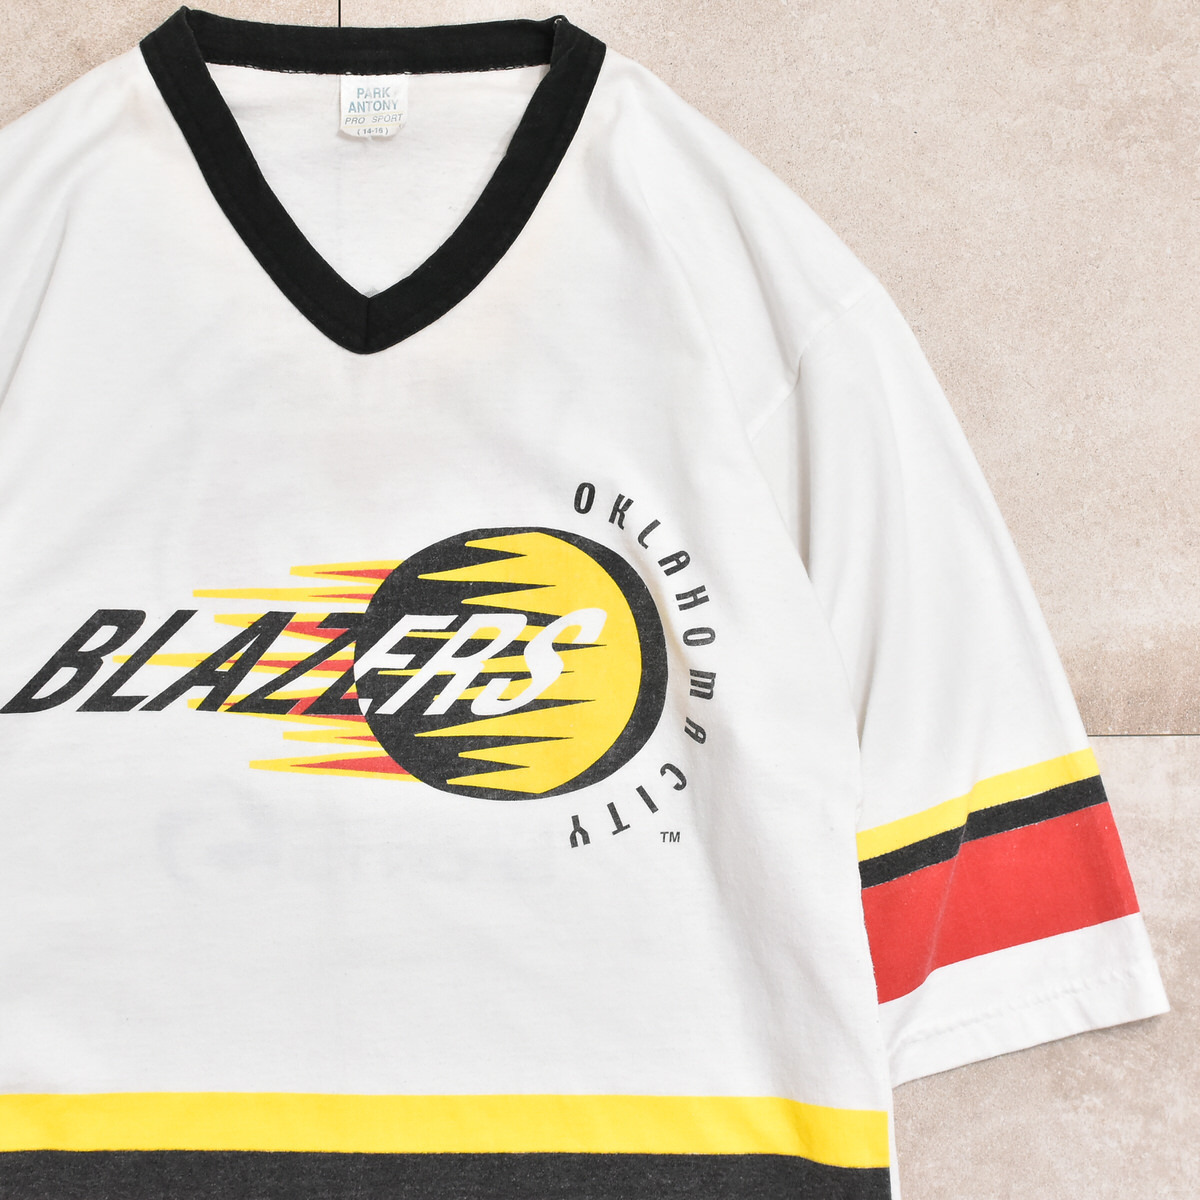 90s USA CHL hockey T-shirtメンズ M相当 90s アメリカ製 CHL オクラホマシティ・ブレイザーズ ホッケーTシャツ 半端_画像1